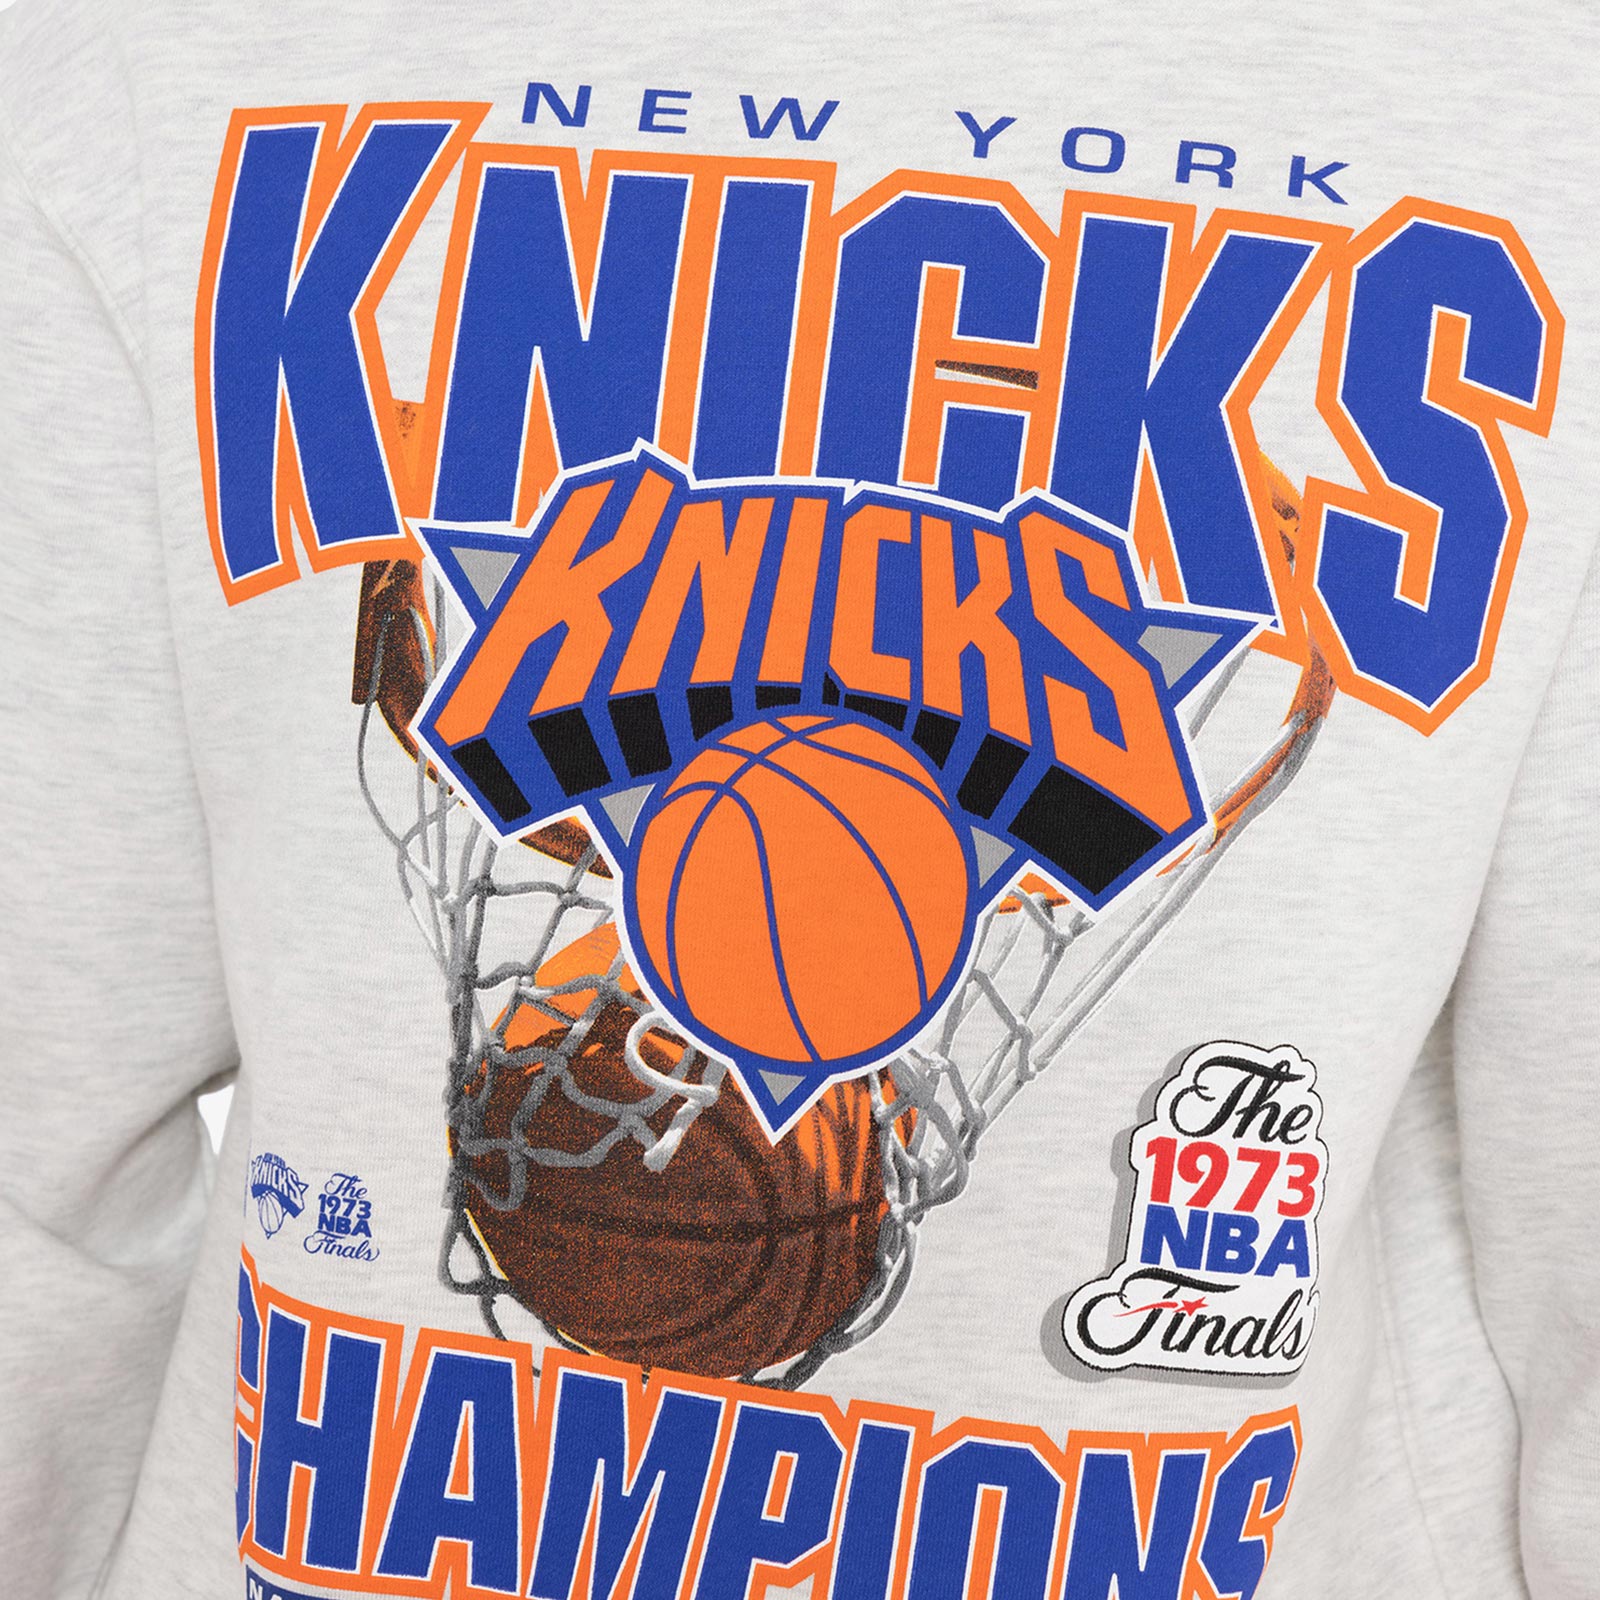 Vintage Vintage 90s New York KNICKS NBA Crewneck Sweatshirt M, Grailed